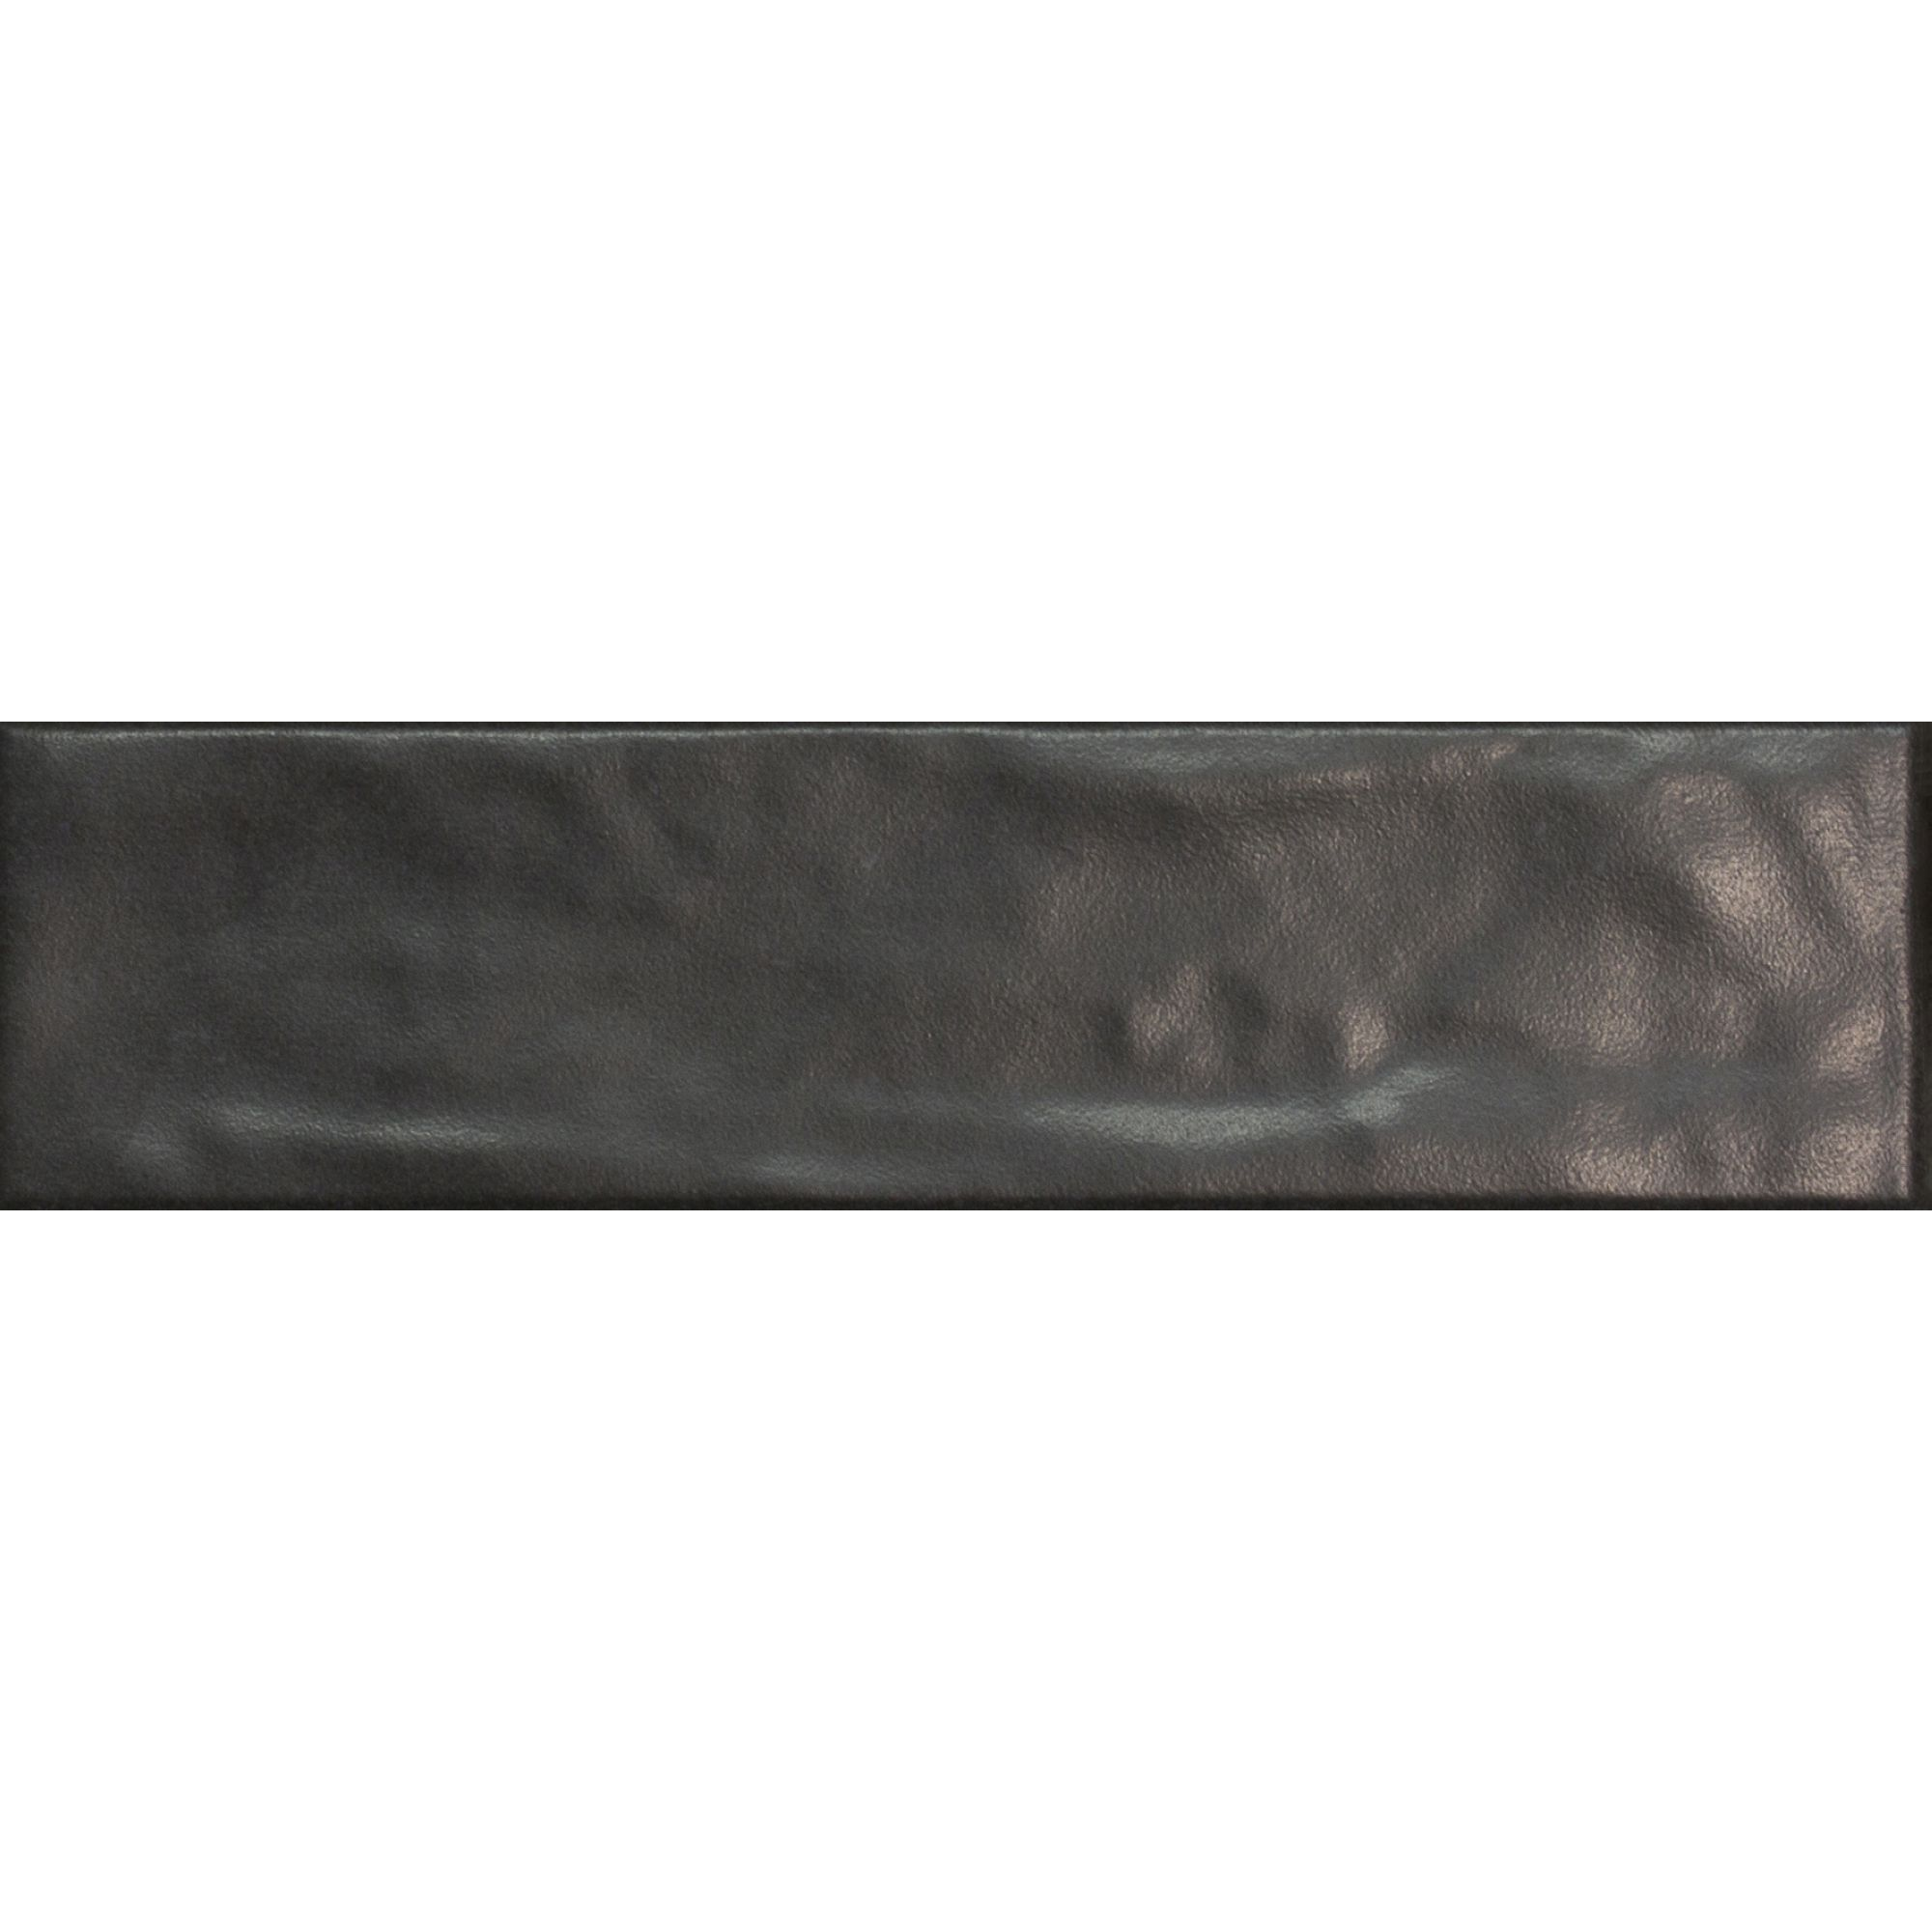 Wandfliese 'Tempo' grau/schwarz nuanciert 6,5 x 25 cm + product picture